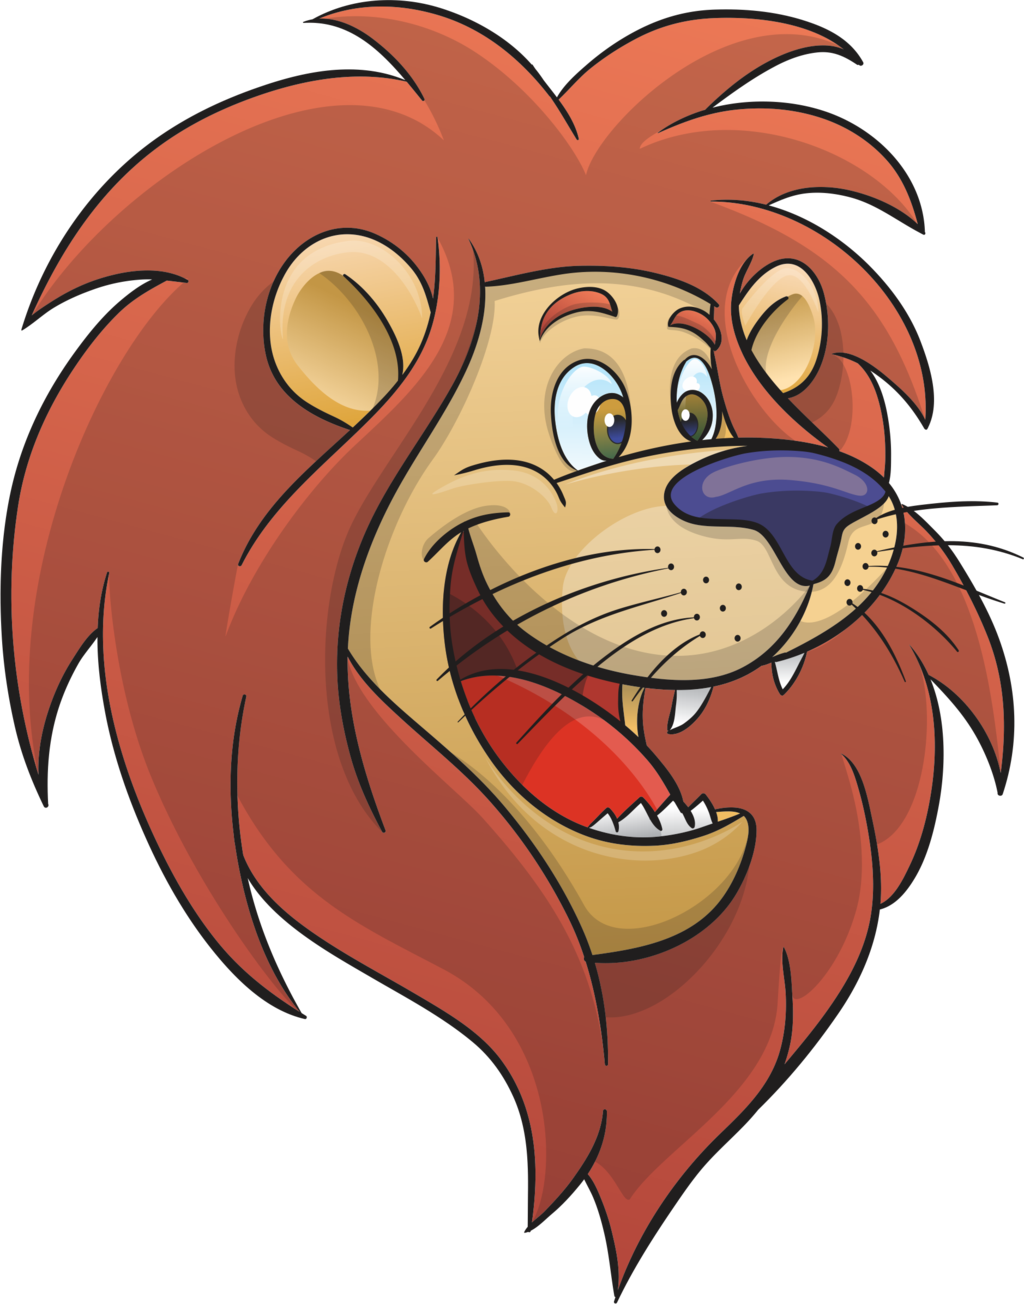 Cartoon Lion Face - ClipArt Best